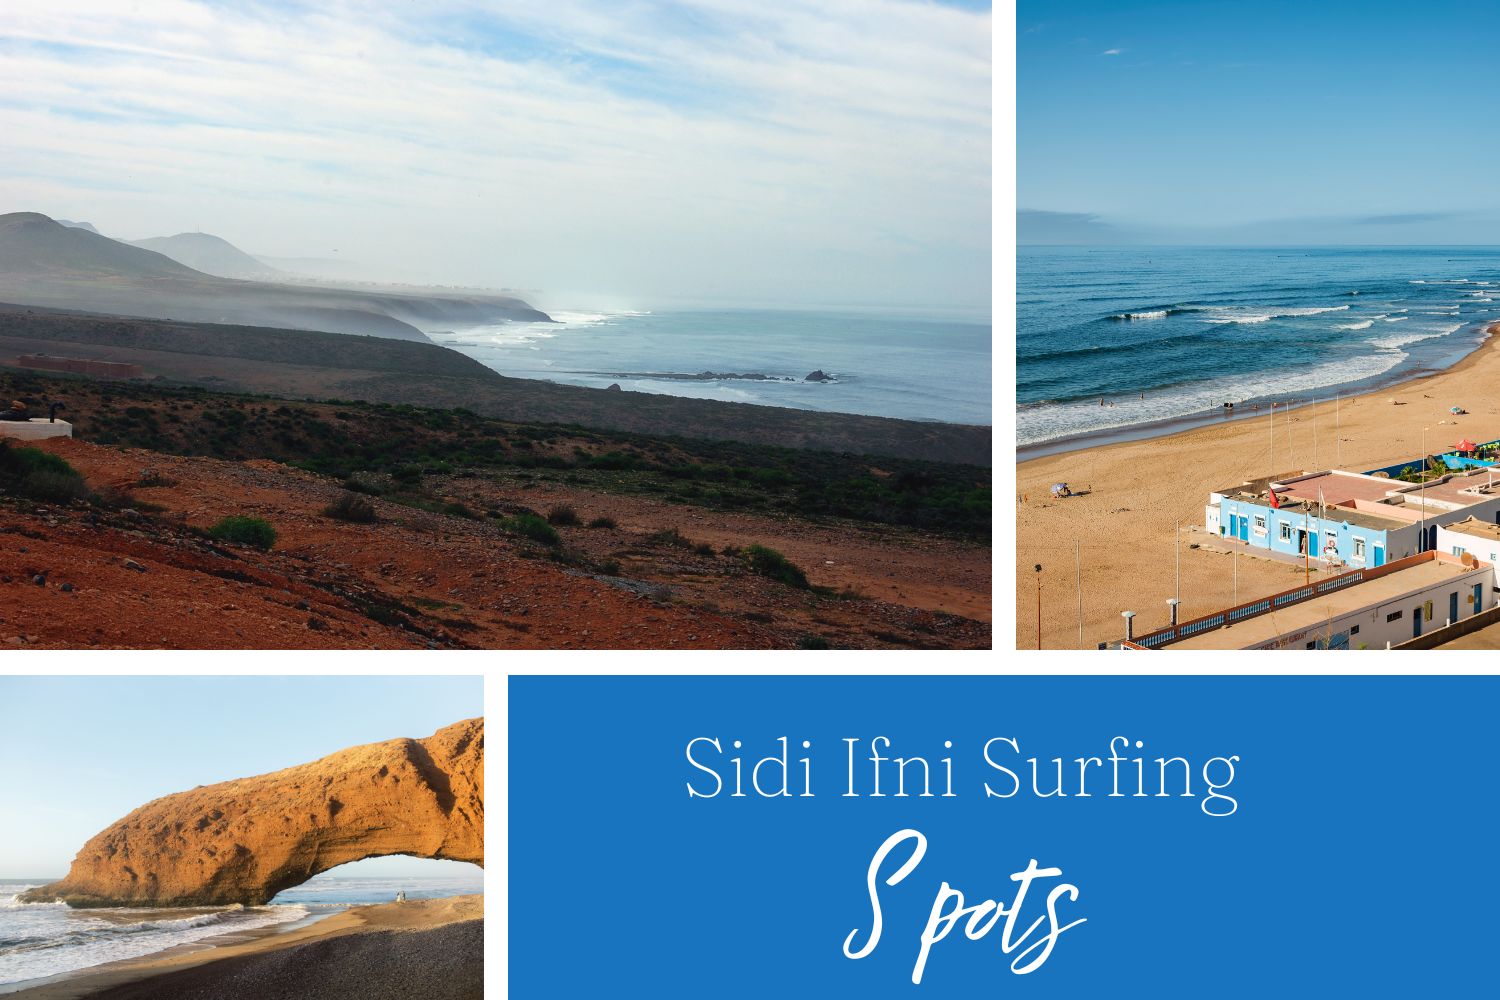 Sidi Ifni Surfing Spots